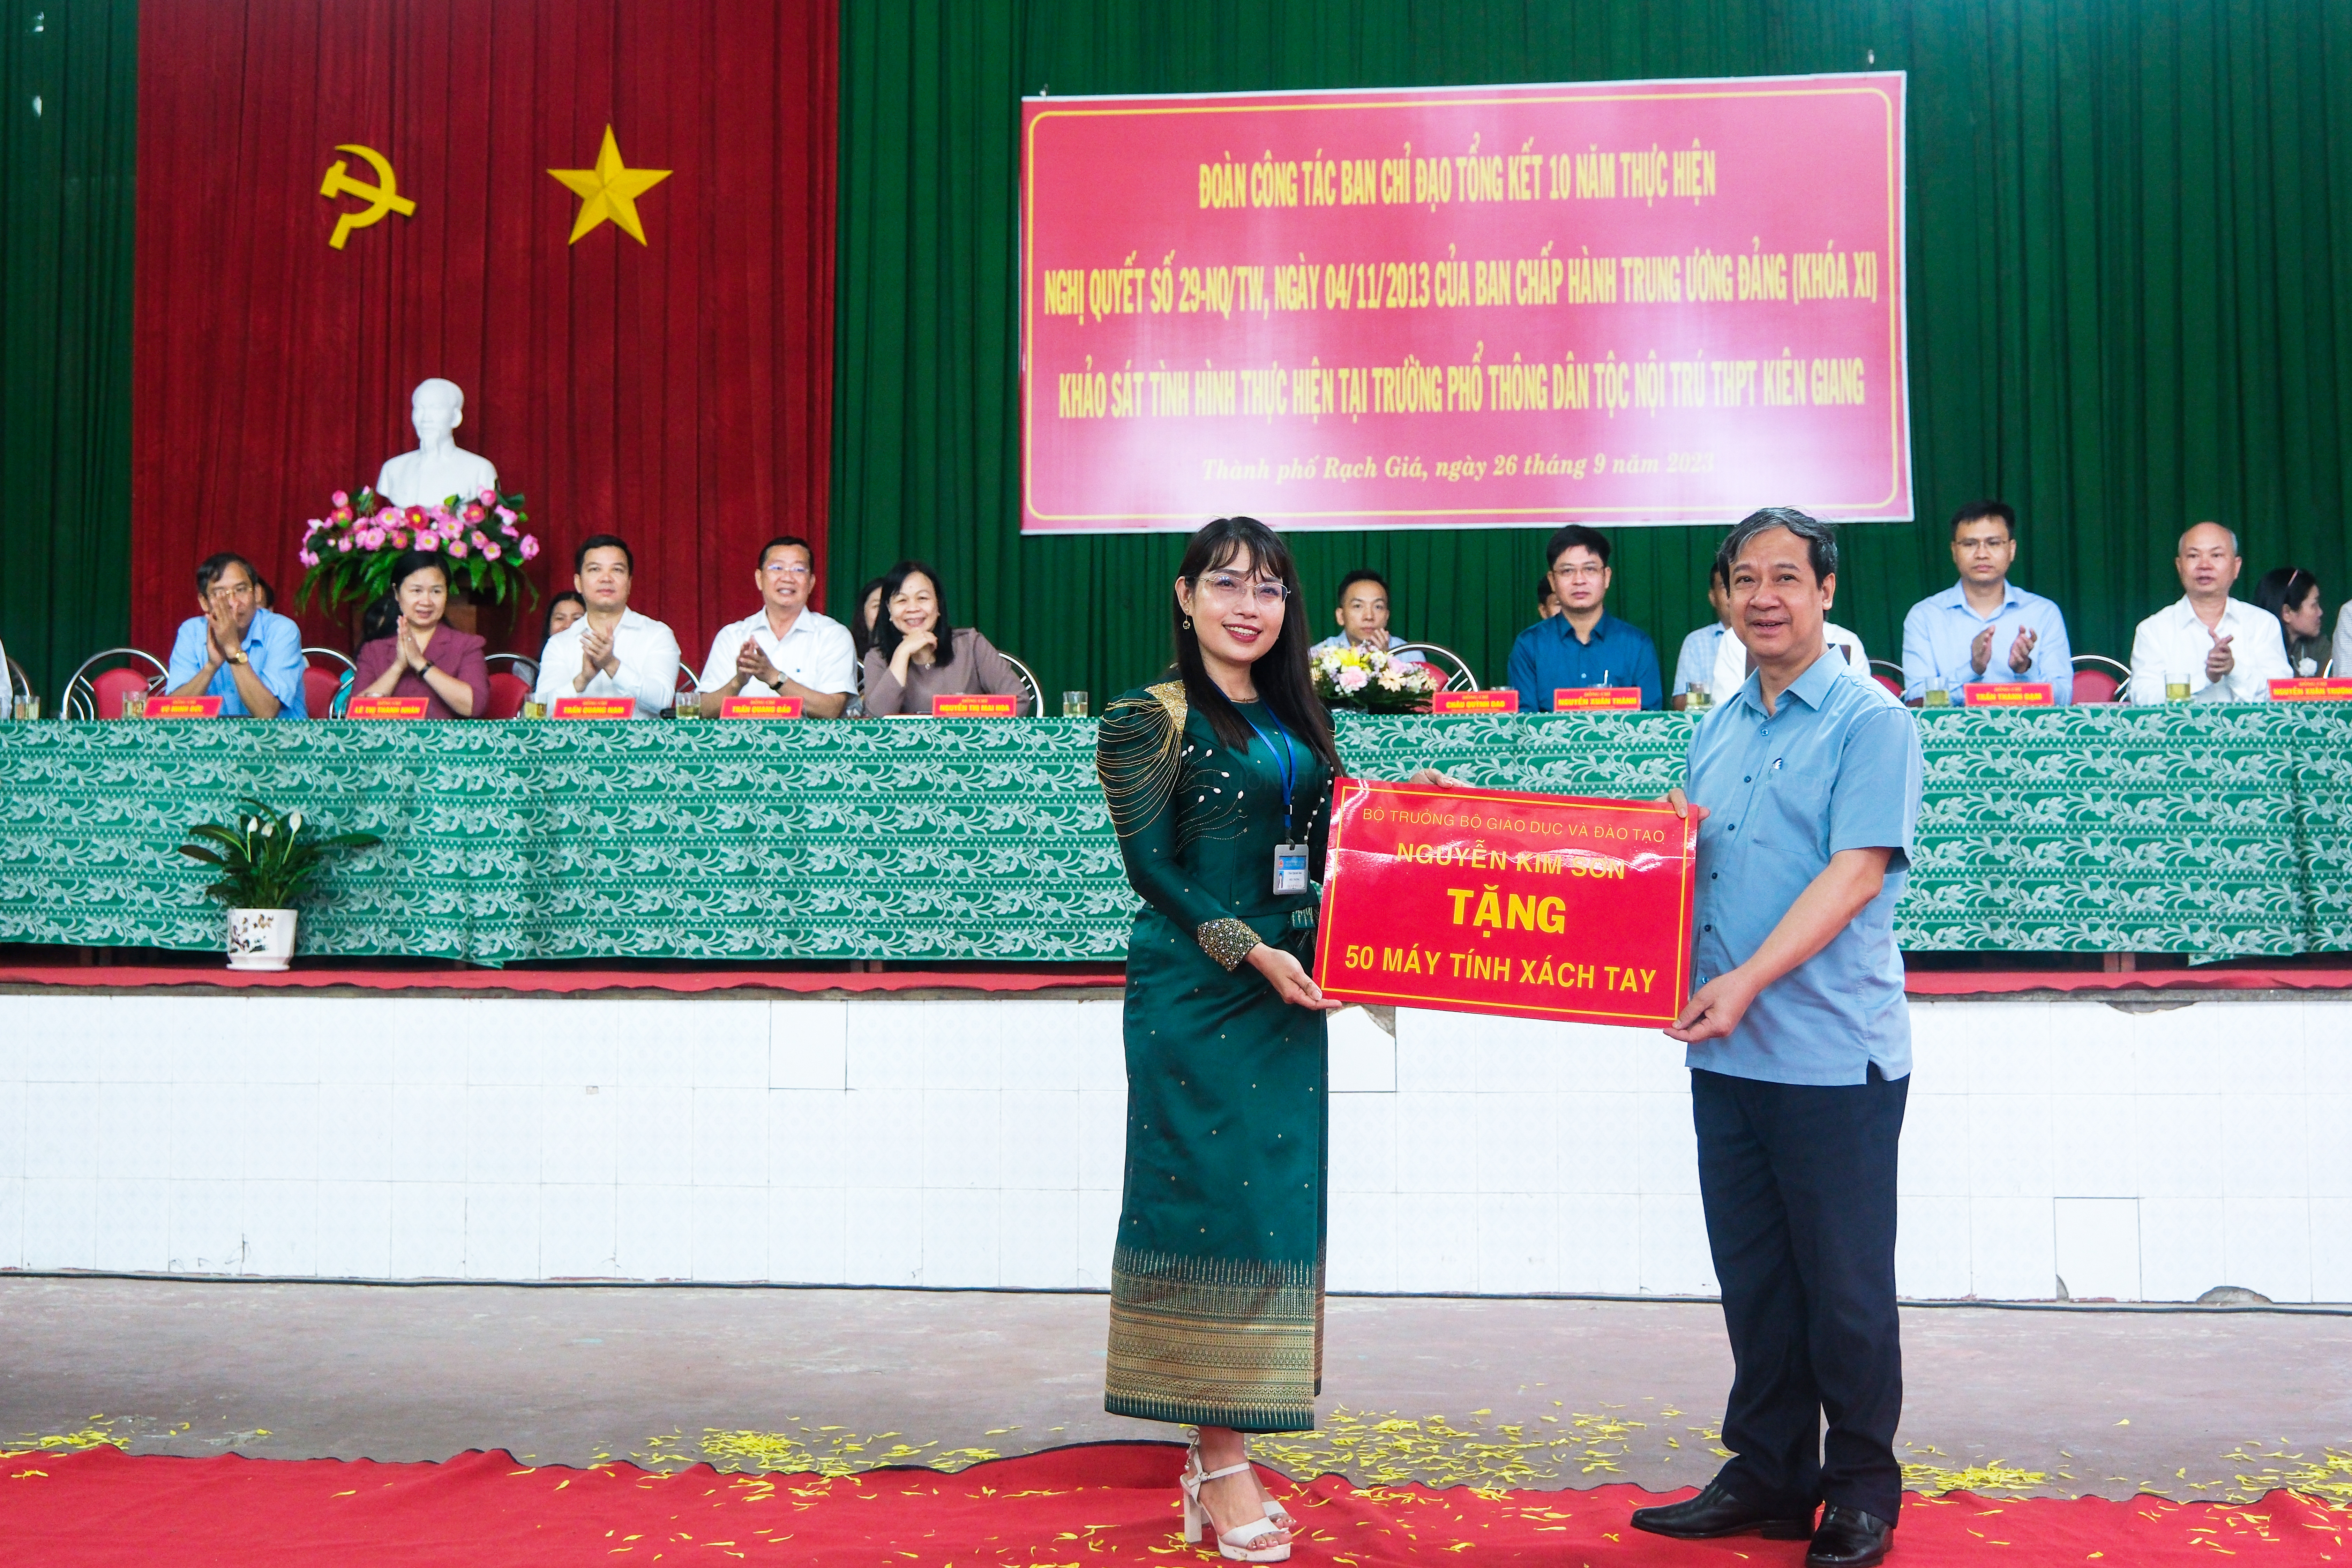 Bộ trưởng Nguyễn Kim Sơn tặng quà cho học sinh nhân chuyến khảo sát tại trường phổ thông dân tộc nội trú THPT Kiên Giang.